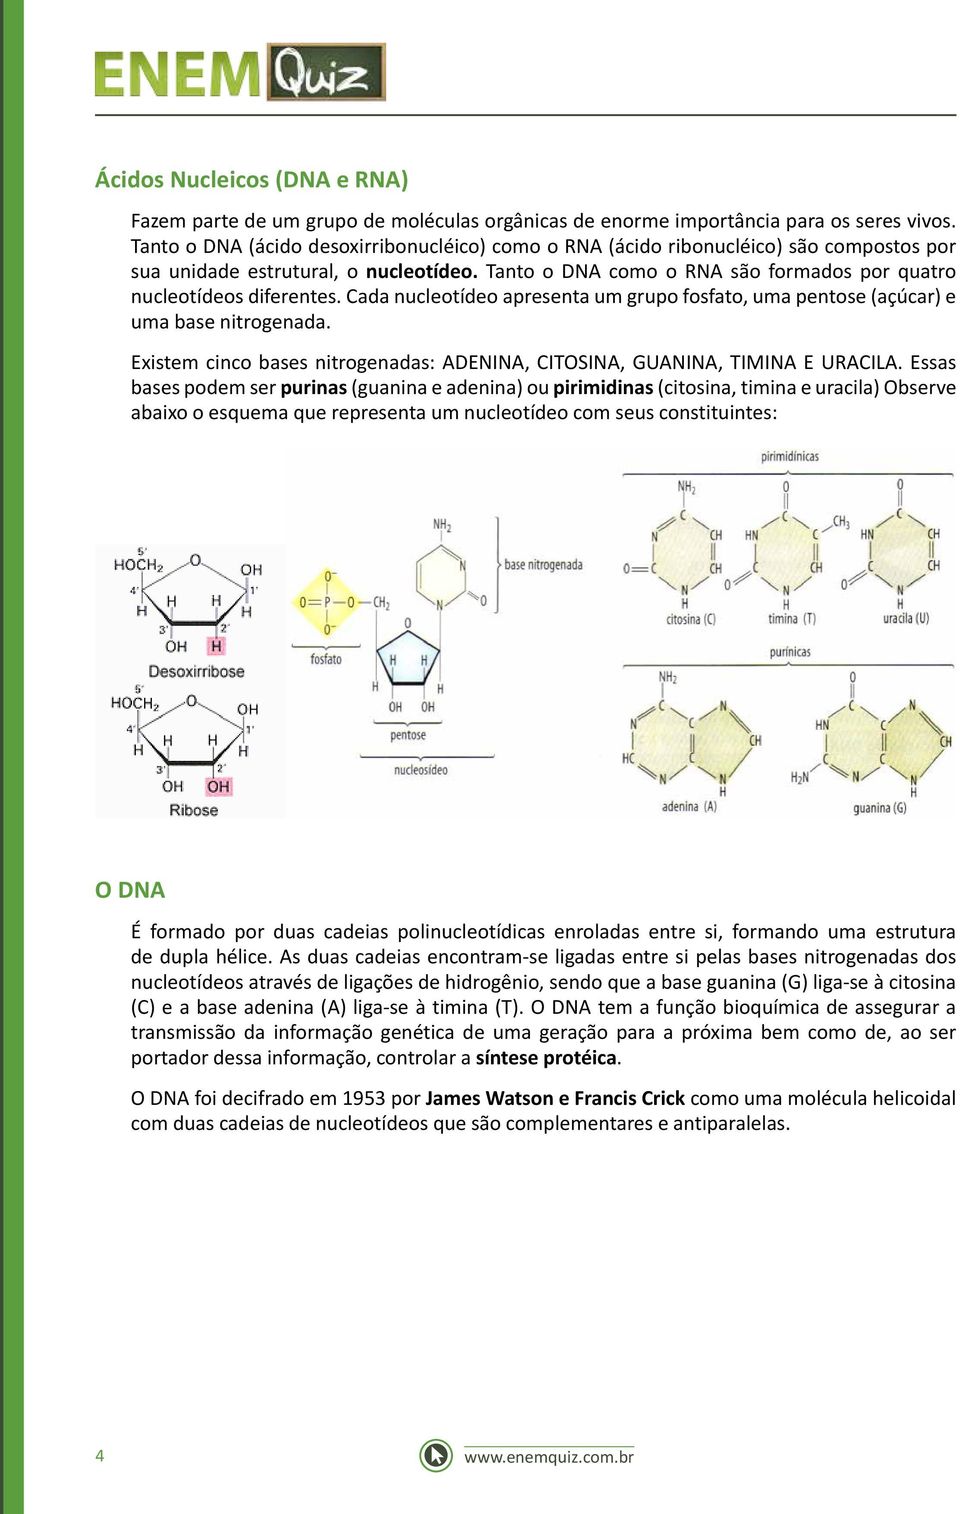 Cada nucleotídeo apresenta um grupo fosfato, uma pentose (açúcar) e uma base nitrogenada. Existem cinco bases nitrogenadas: ADENINA, CITOSINA, GUANINA, TIMINA E URACILA.